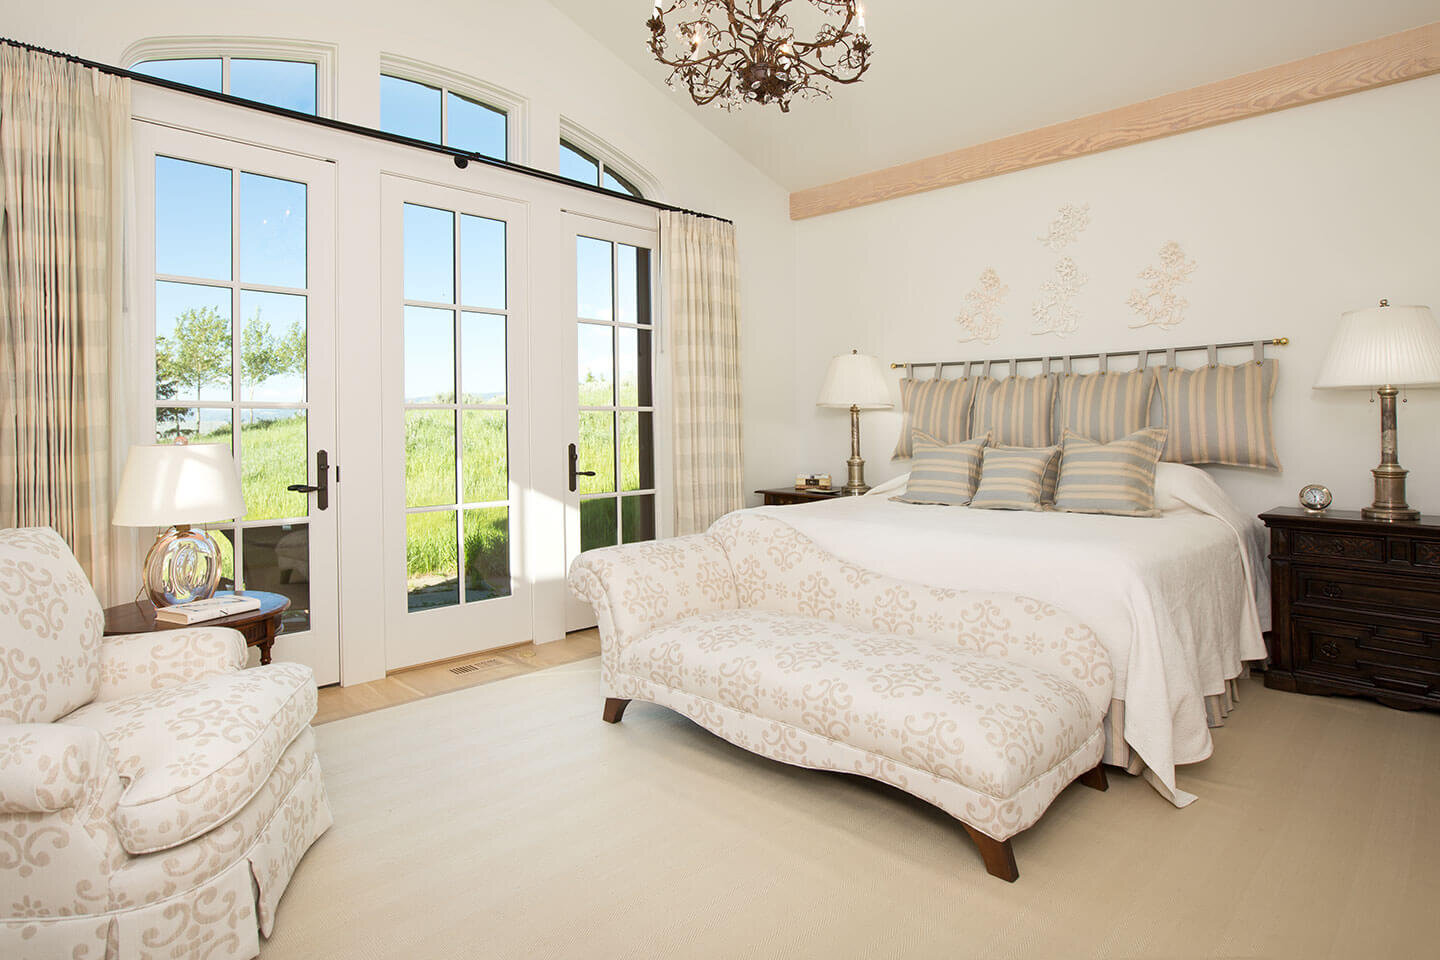 文艺复兴风格的卧室与象牙白色调色板和落地窗